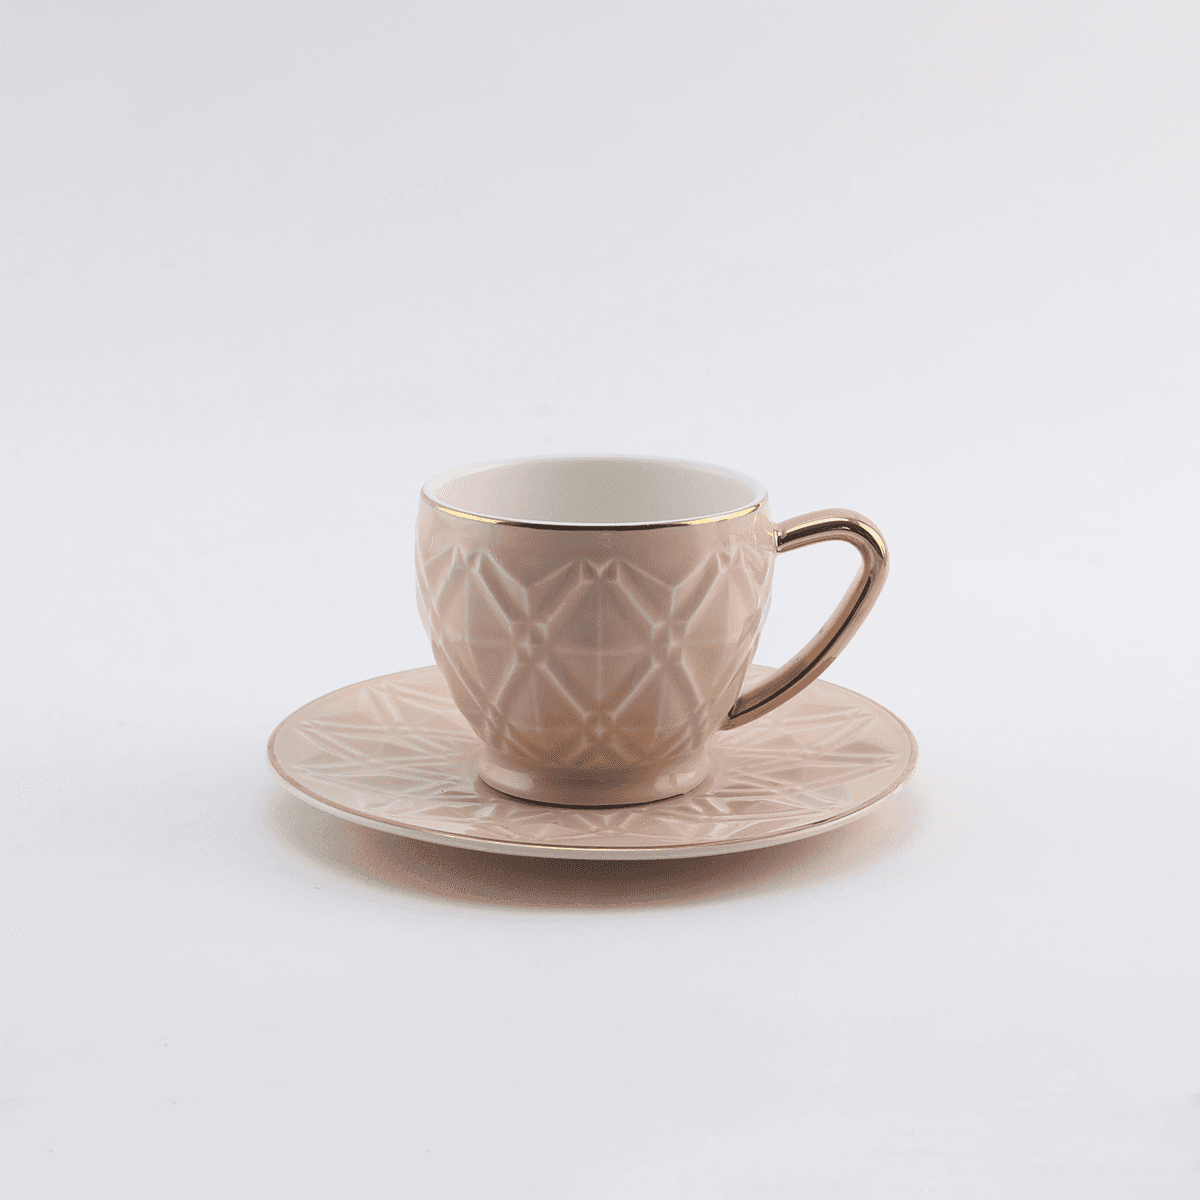 طقم فناجين قهوة مع صحون بورسيلين 12 قطعة وردي من روز  Rose Porcelain Coffee Cup and Saucer